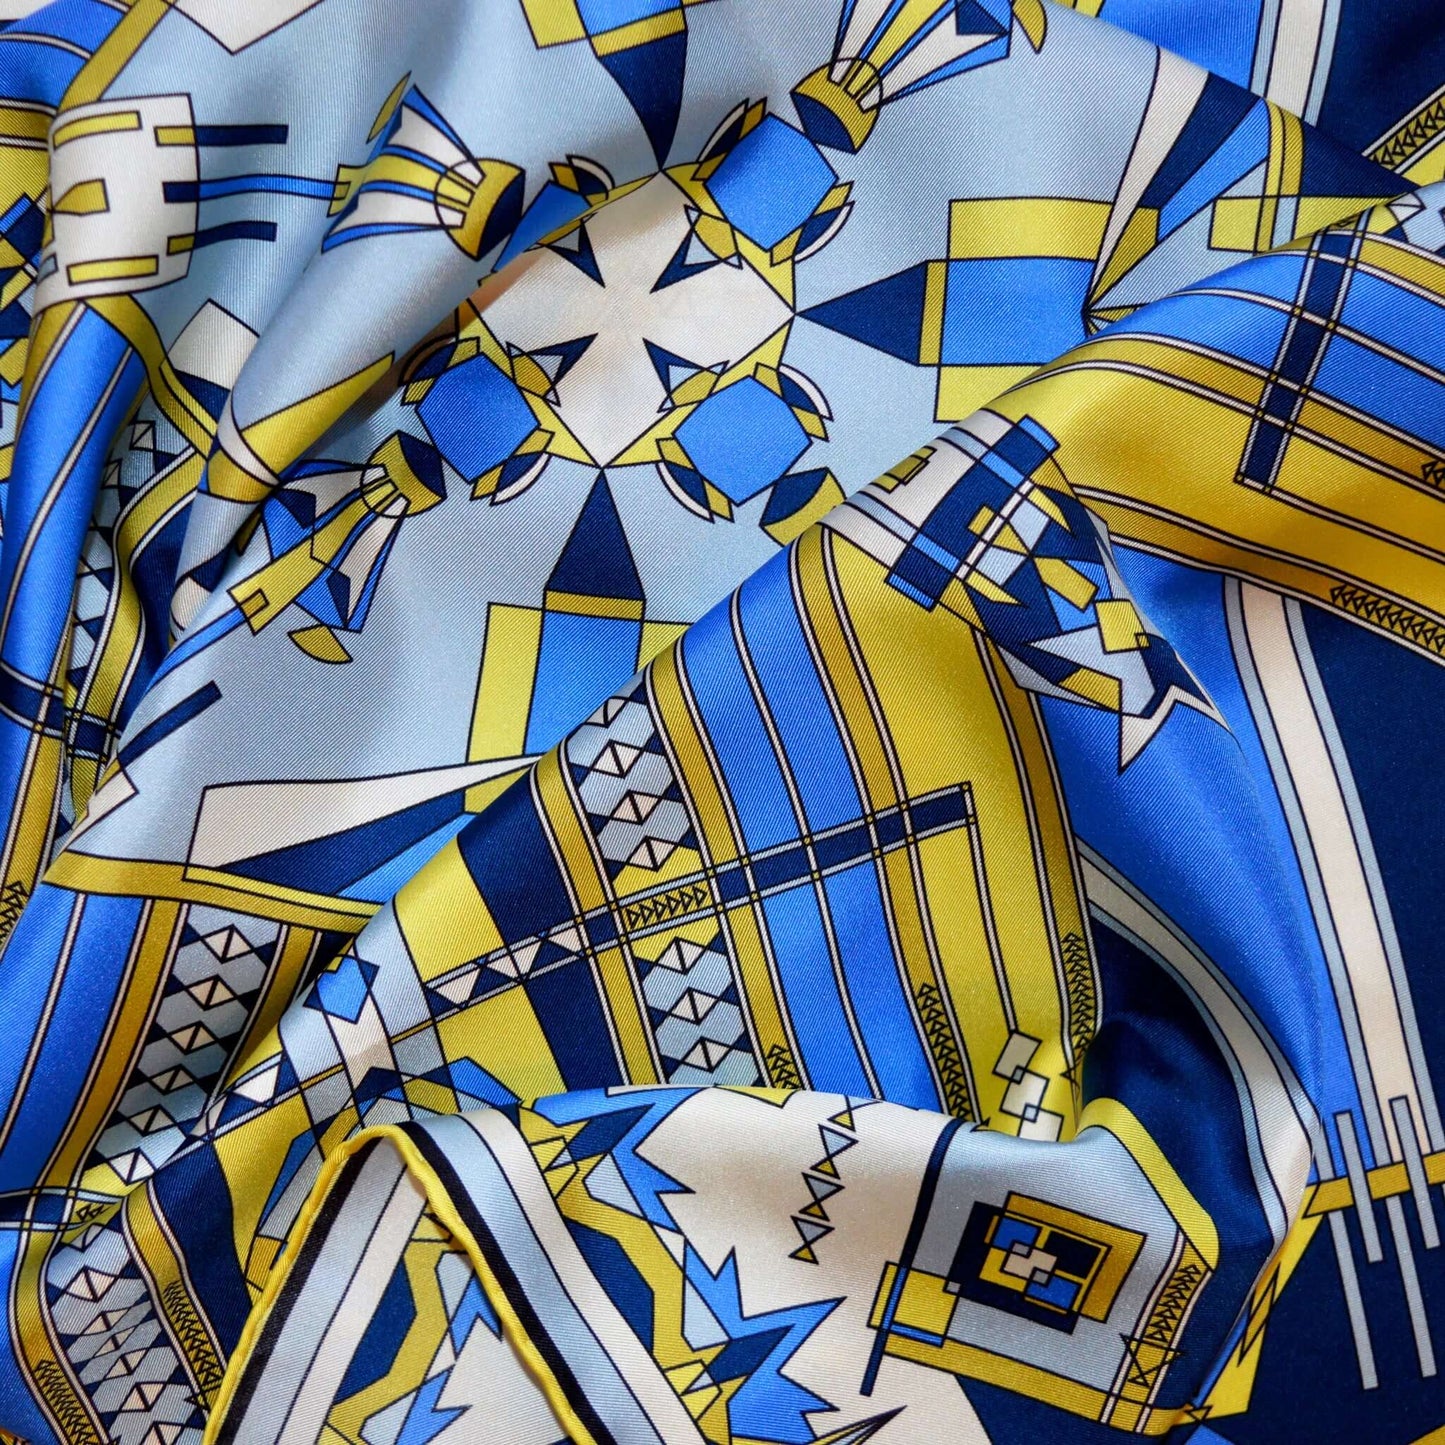 vista ingrandita di un particolare di foulard su tessuto in seta con motivi blu giallo avorio